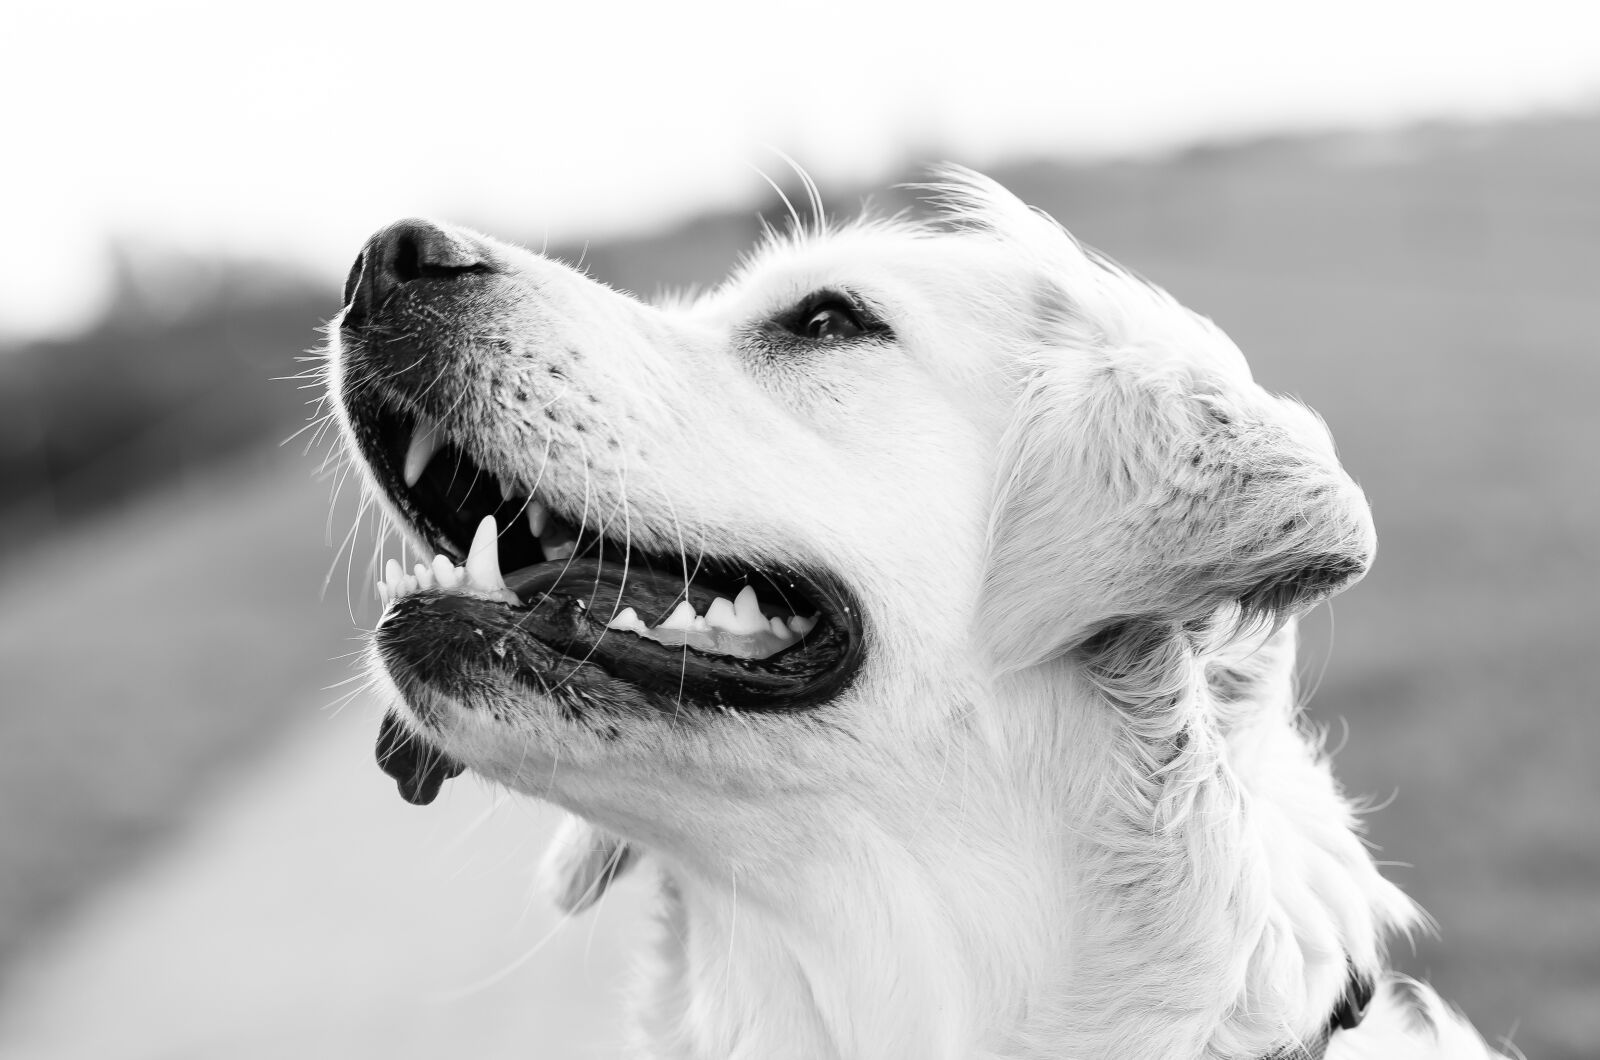 Nikon D5100 sample photo. Pet photography, dog, dog photography